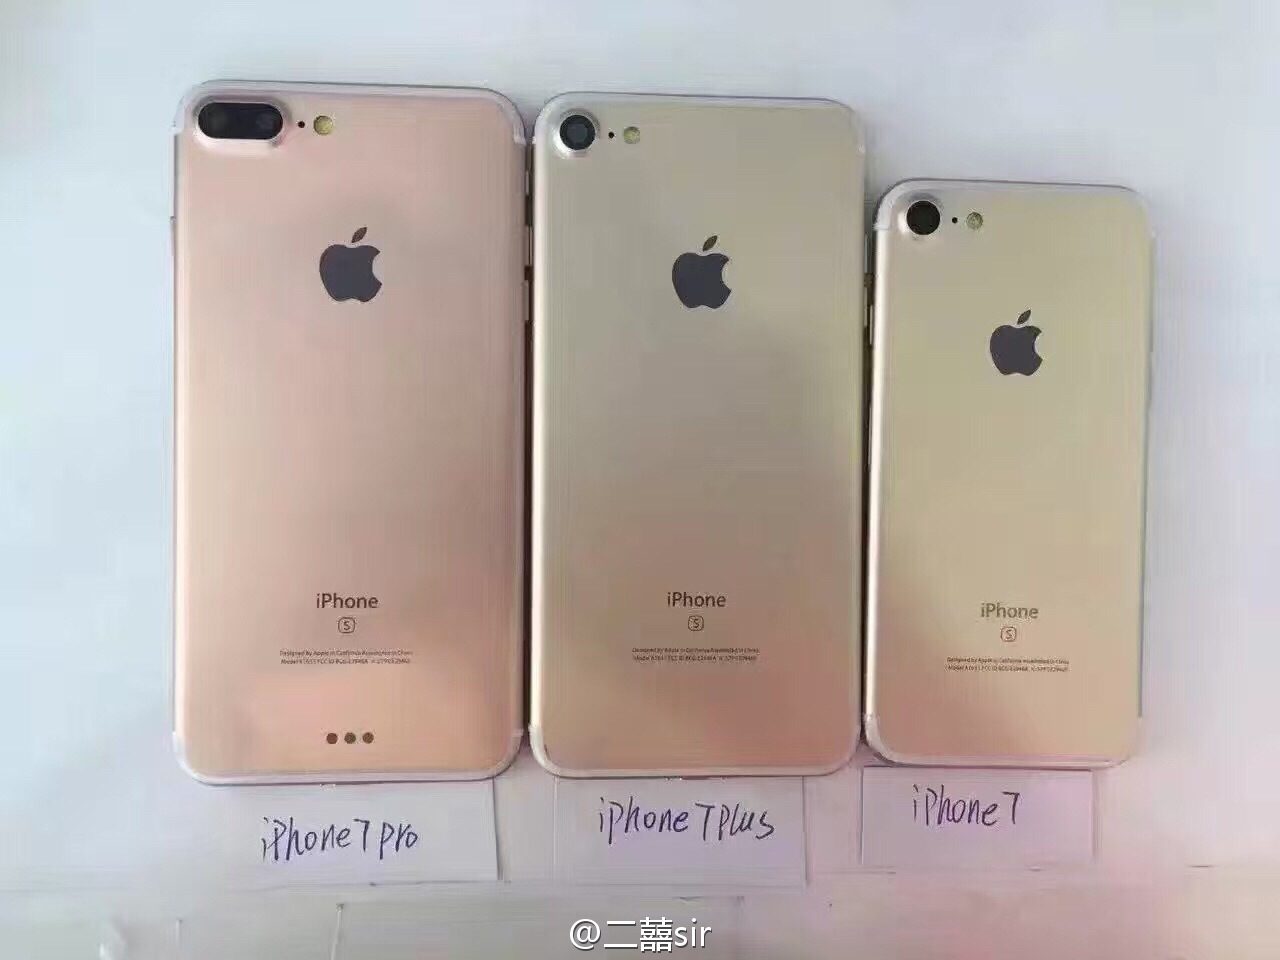 iPhone 7, 7 Plus y ¿iPhone 7 Pro?